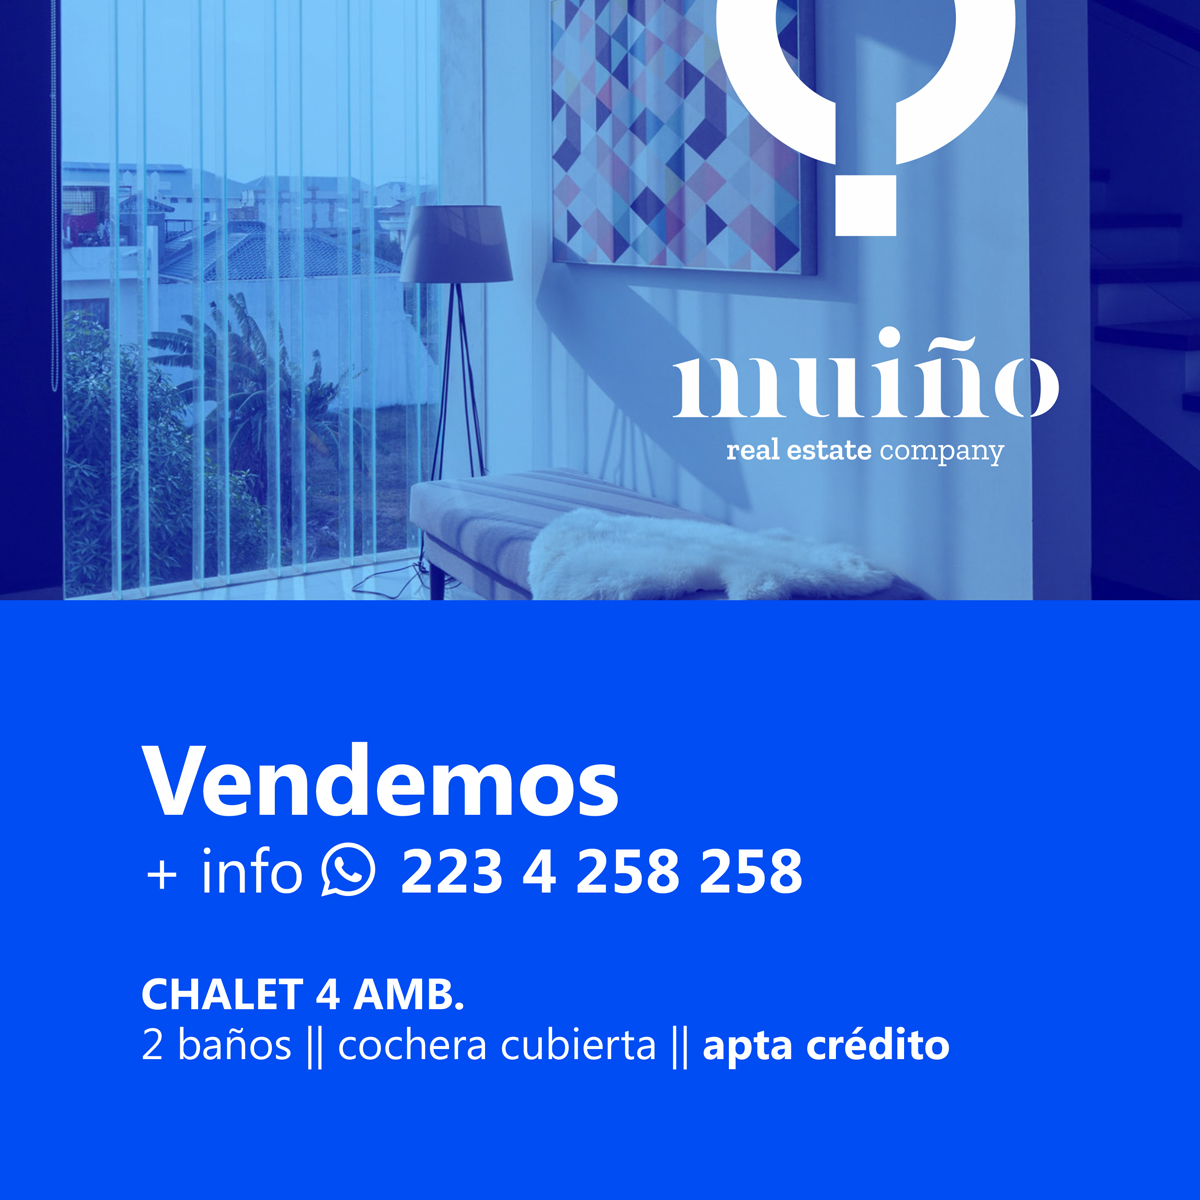 Estructura para publicaciones feed de productos para Muiño real estate company.